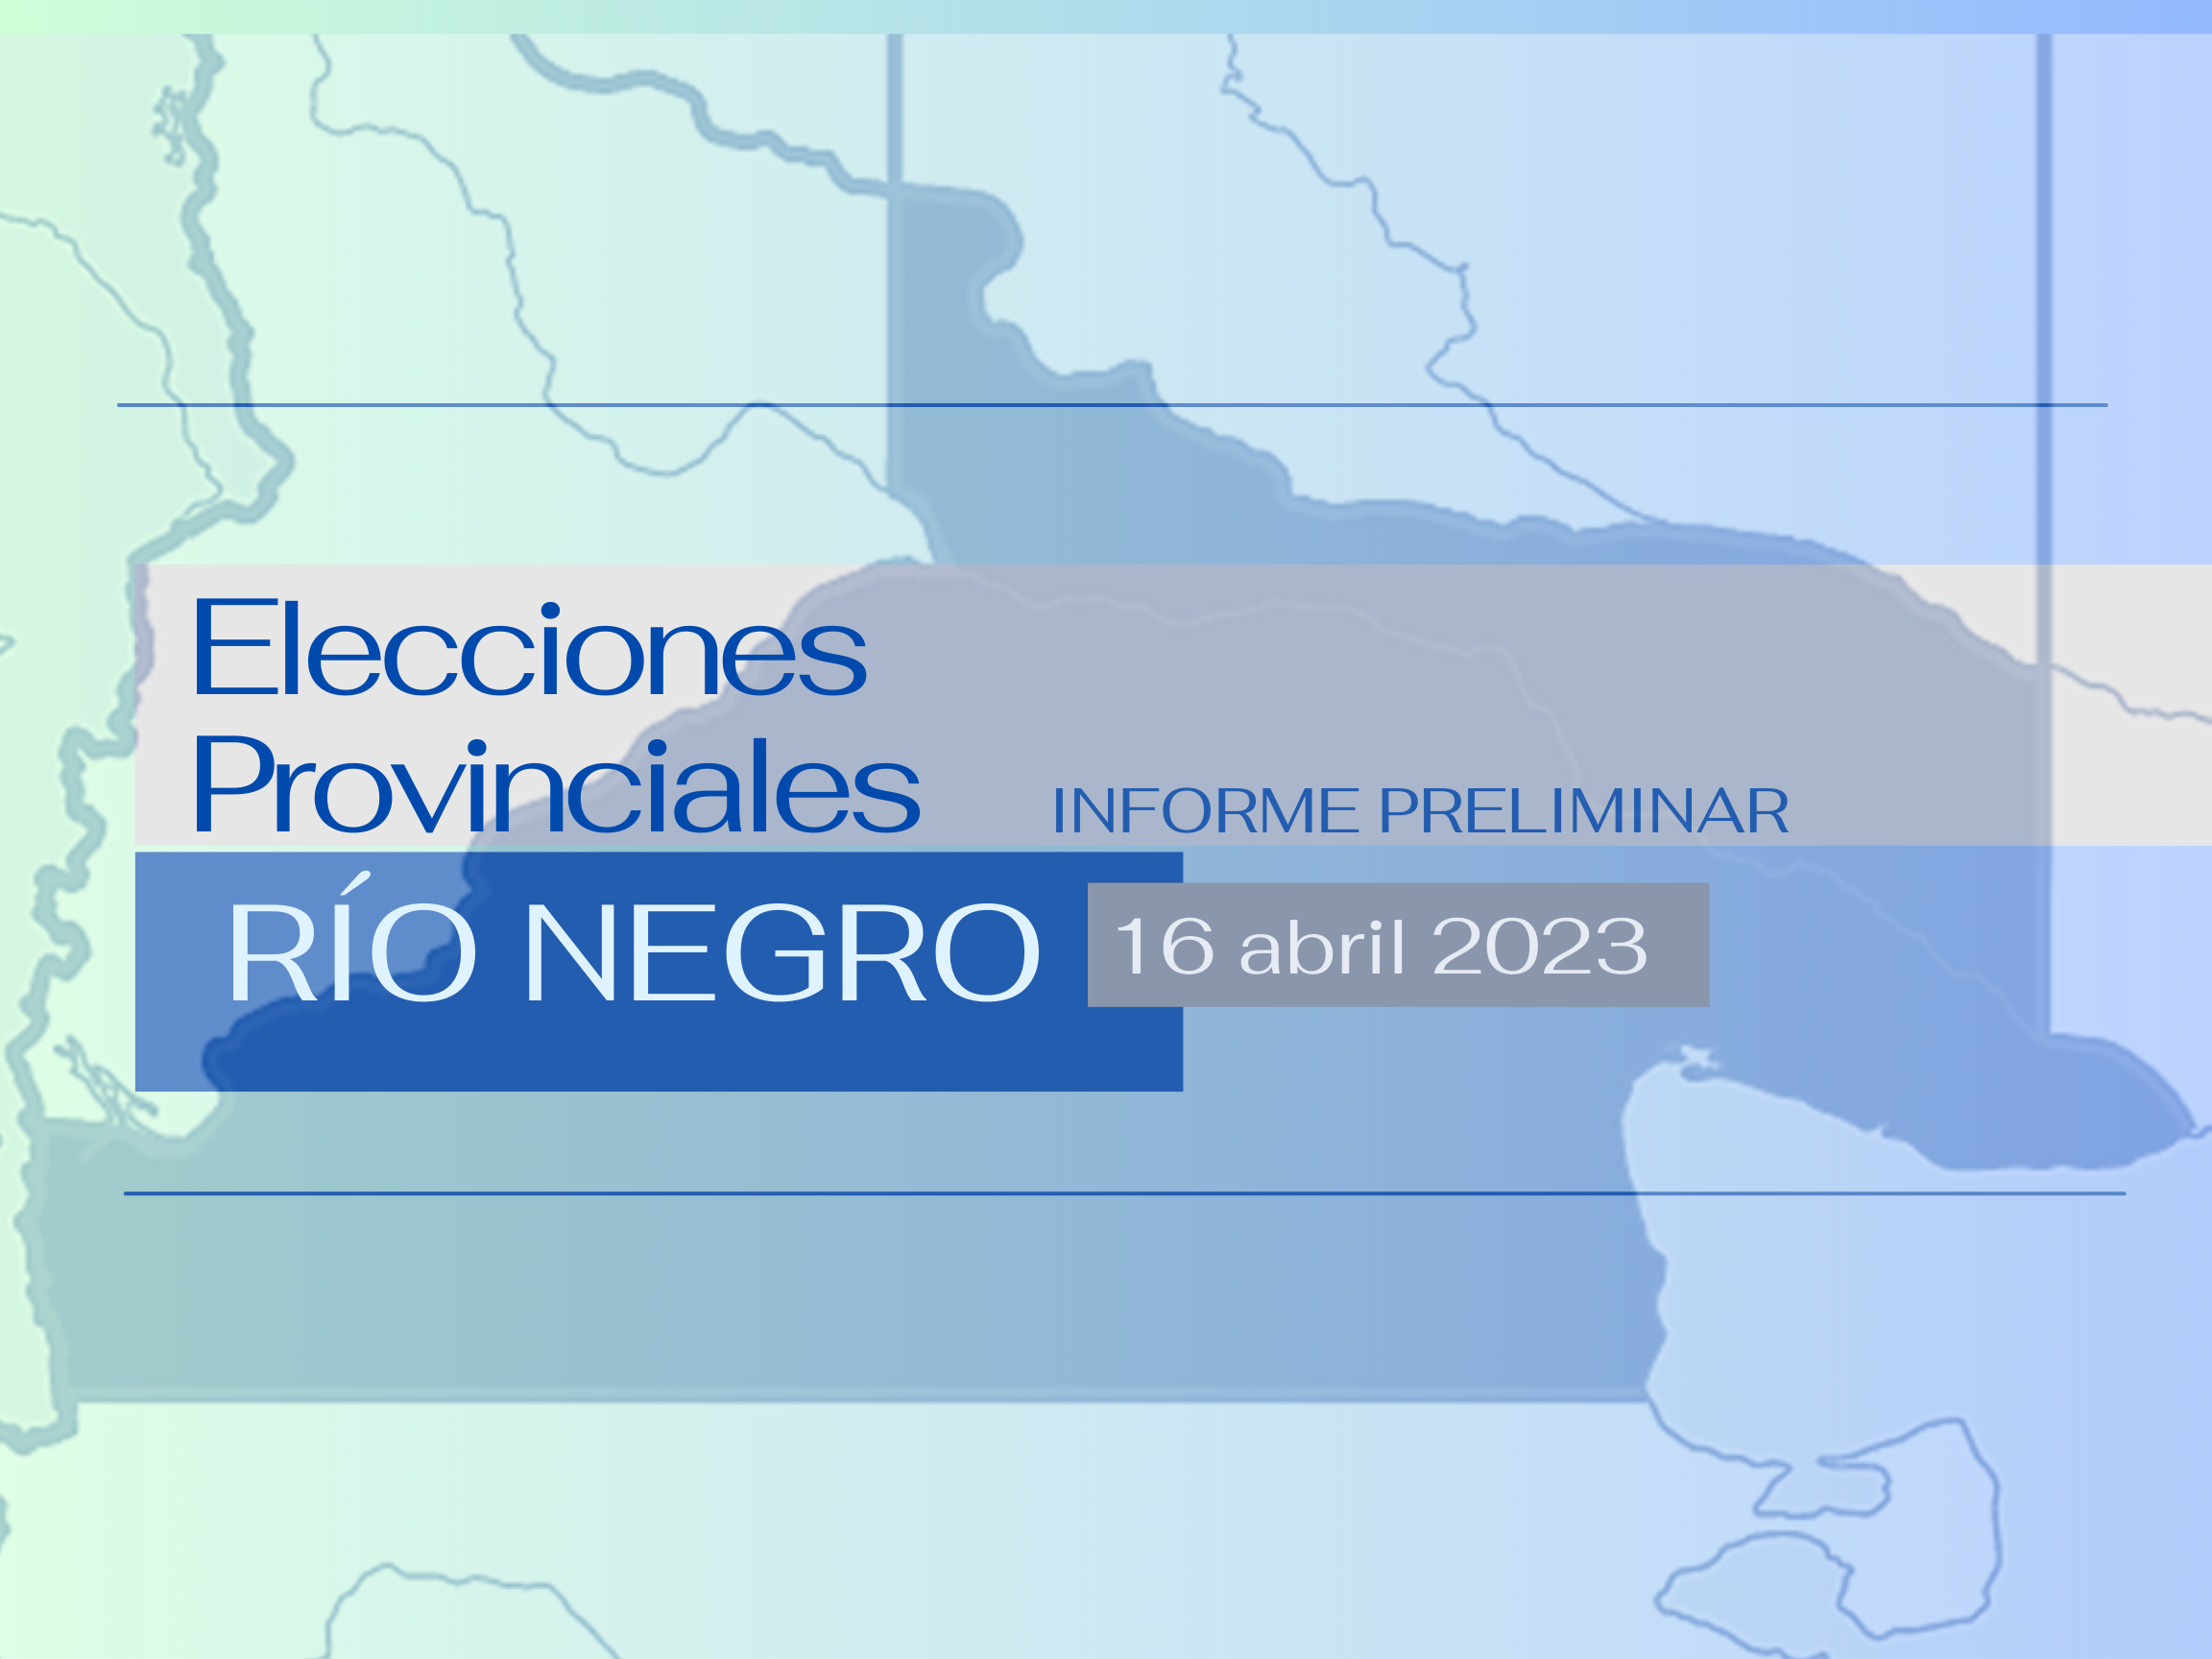 ELECCIONES PROVINCIALES RÍO NEGRO 2023 – Informe preliminar